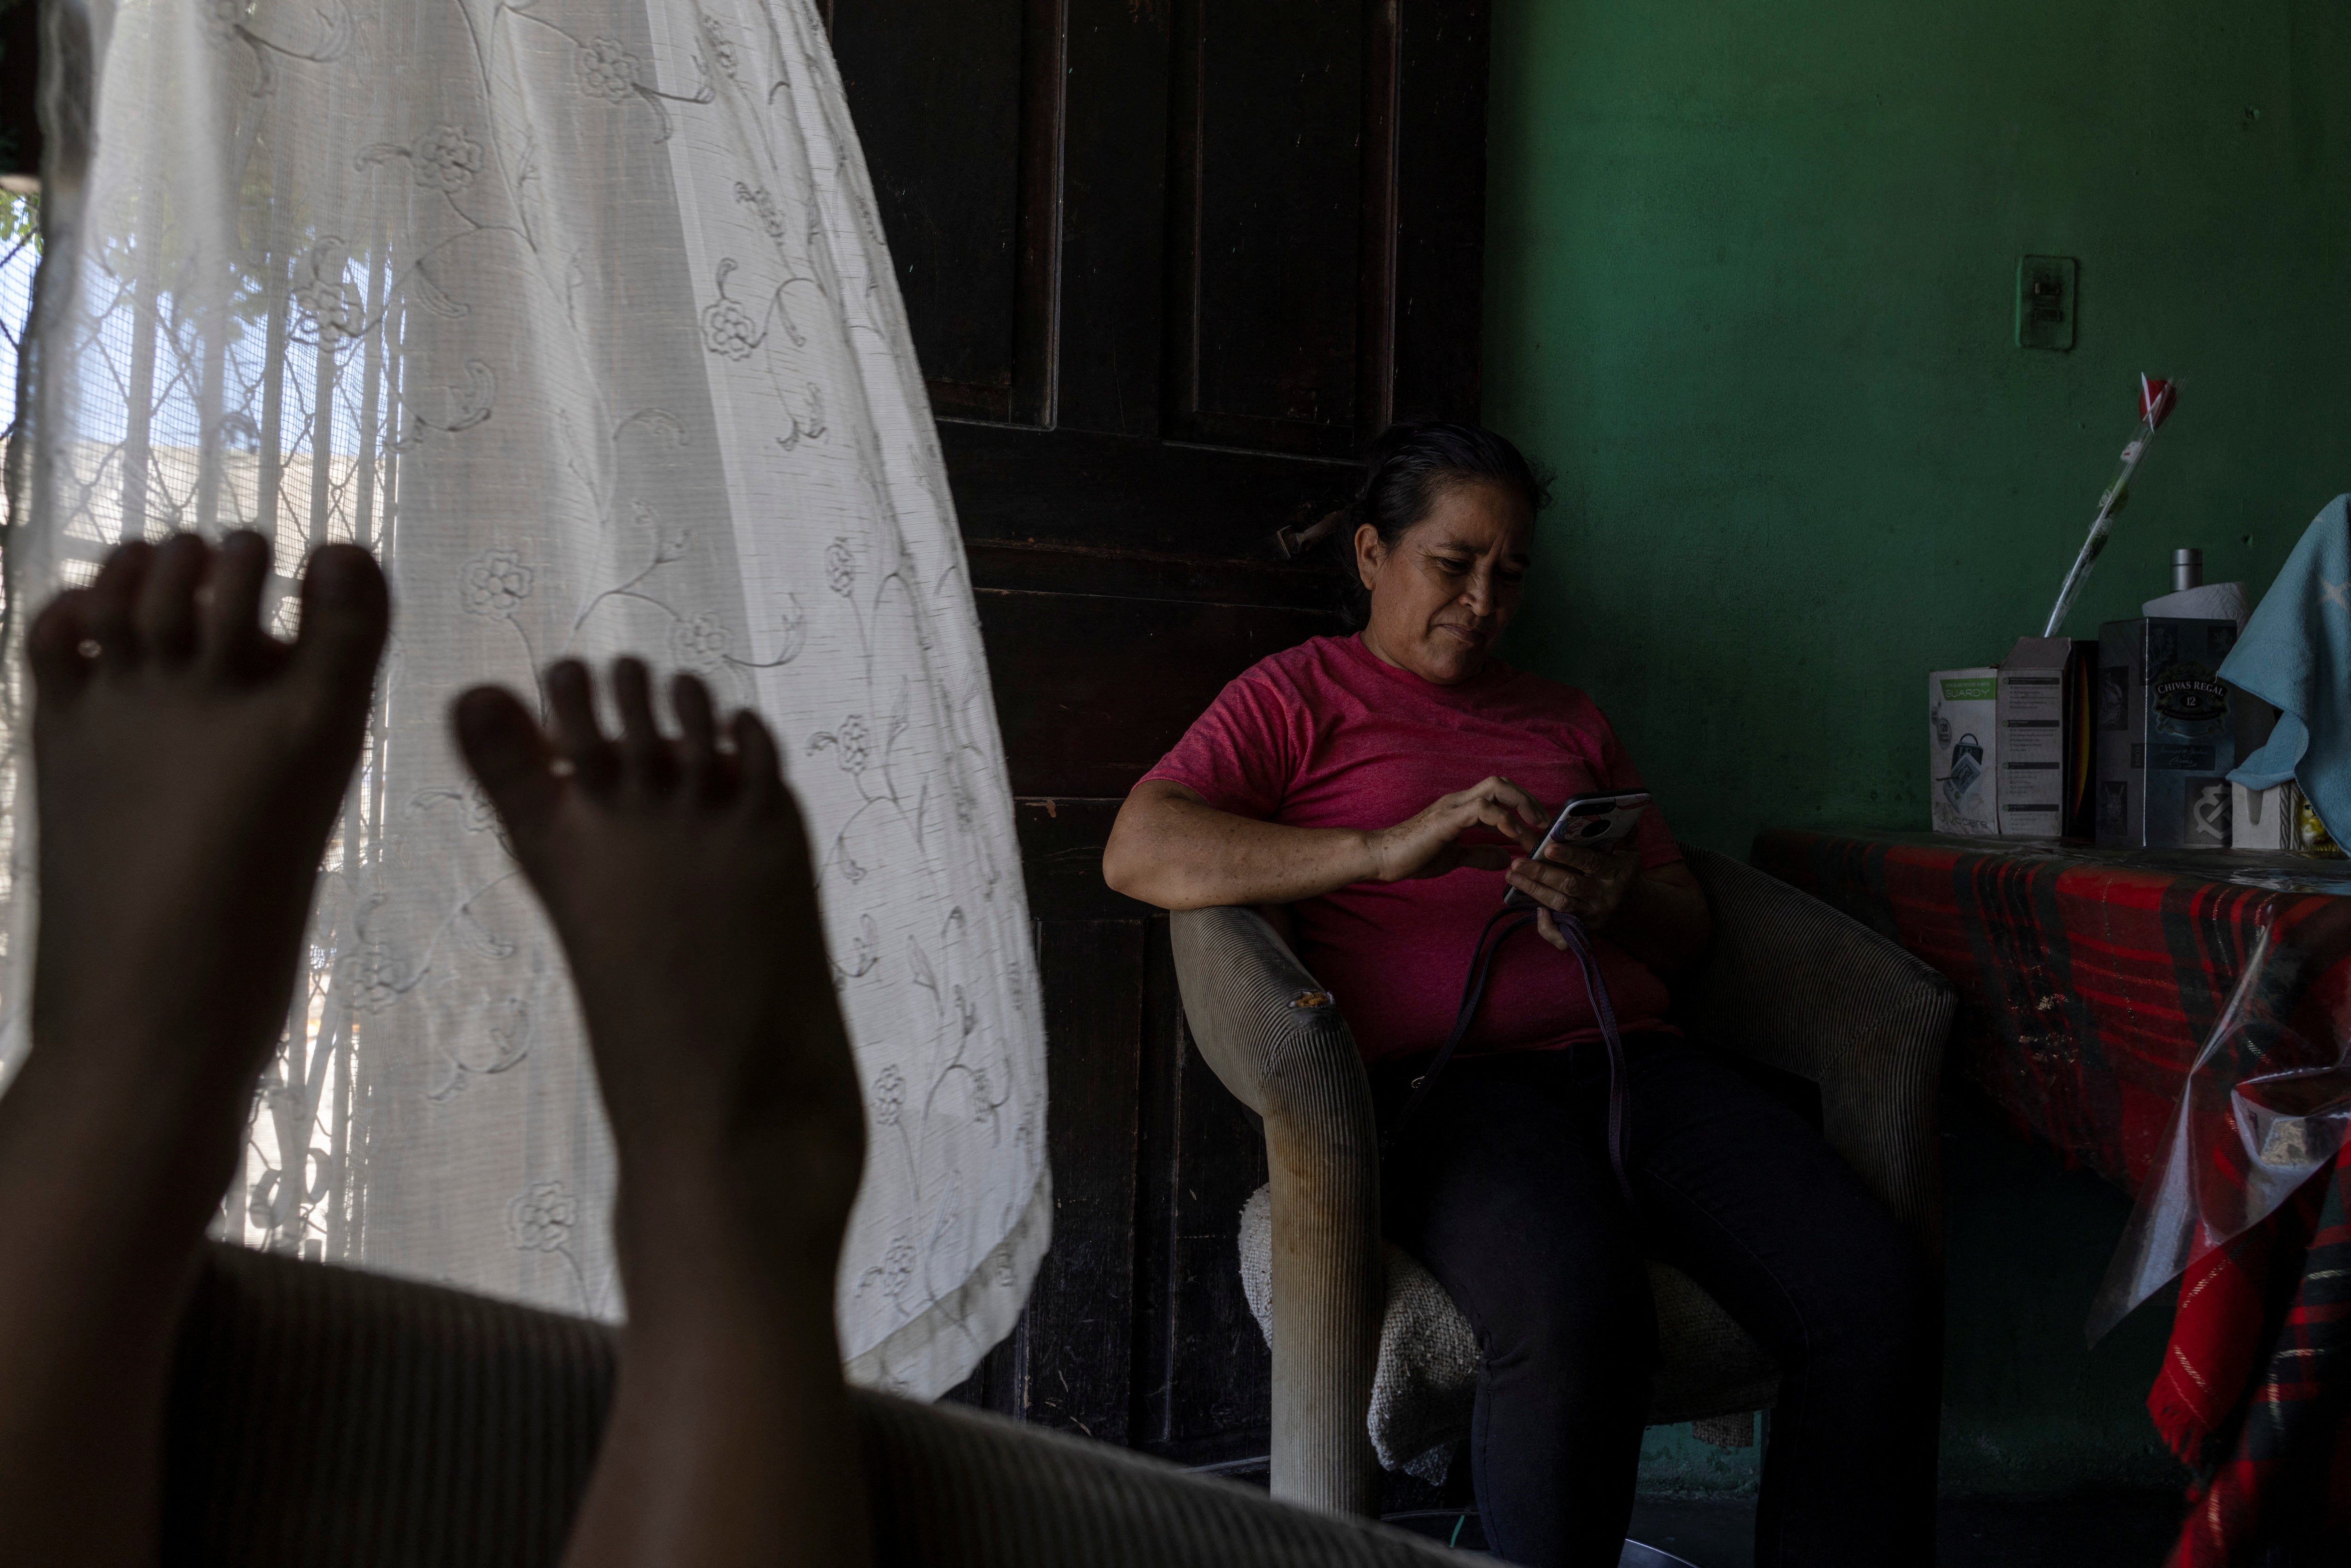 Maria checks her phone while waiting in Honduras